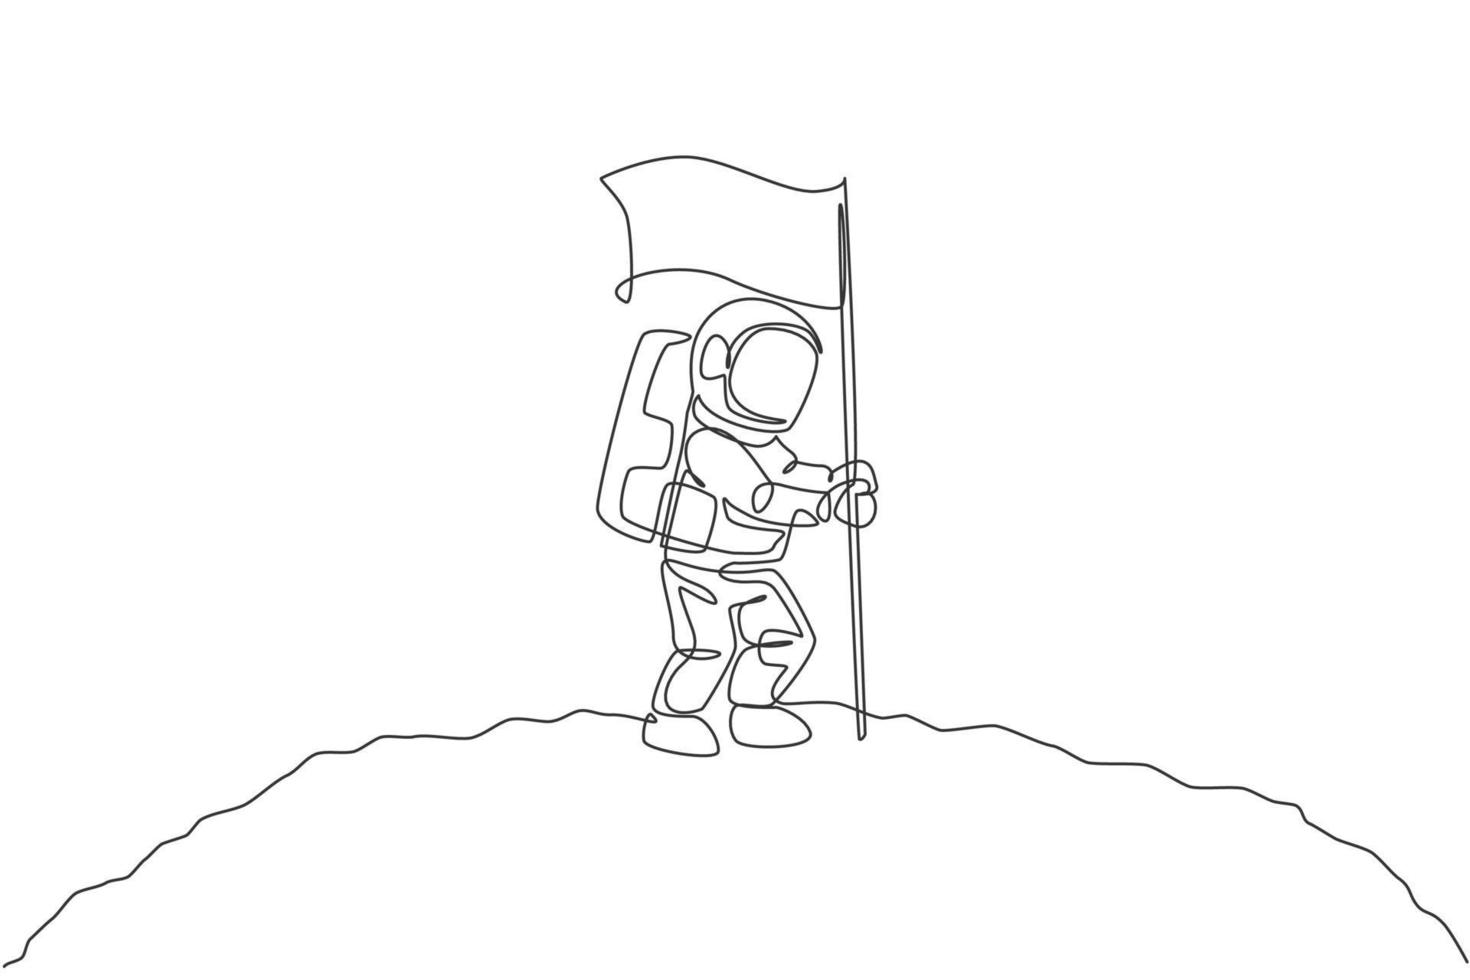 un dibujo de una sola línea del astronauta del hombre del espacio explorando la galaxia cósmica y plantando la bandera en la ilustración de vector de la superficie de la luna. concepto de ficción de vida de espacio exterior de fantasía. diseño de dibujo de línea continua